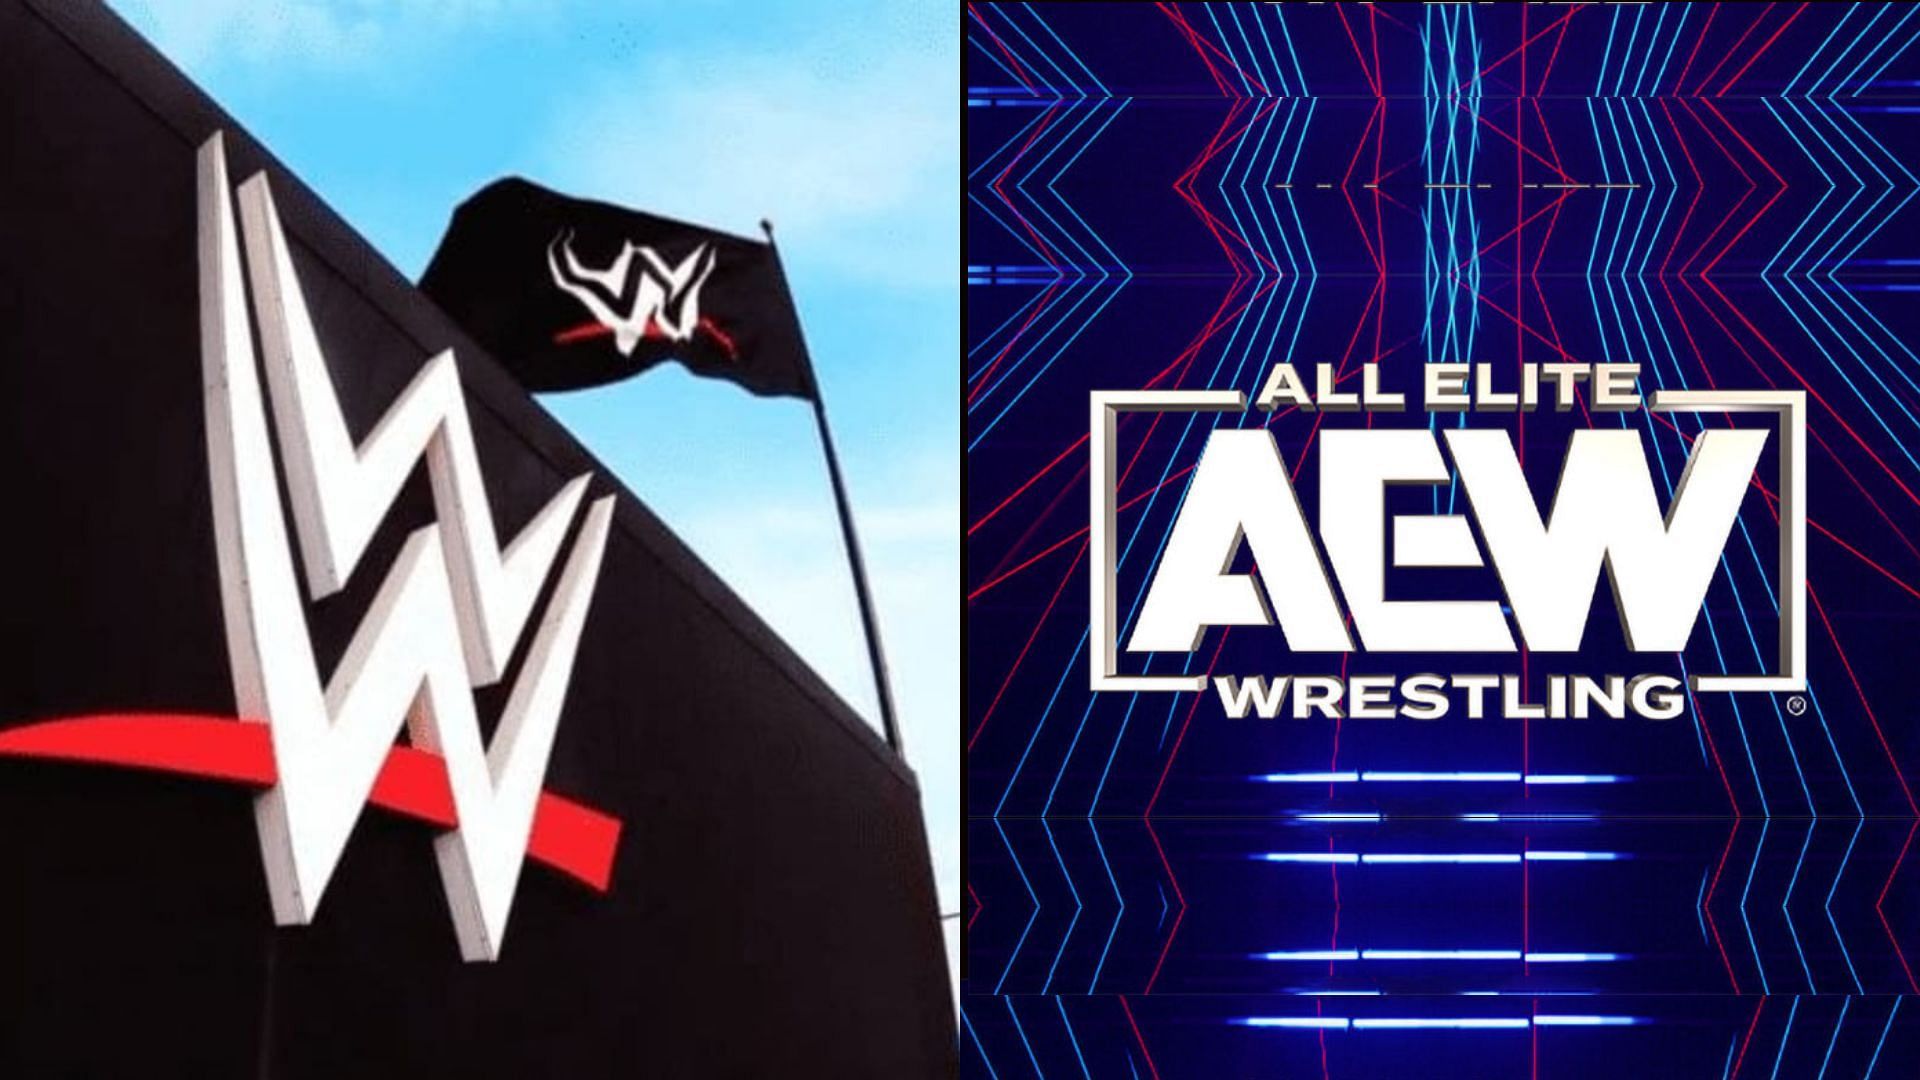 WWE logo (left), All Elite Wrestling logo (right)